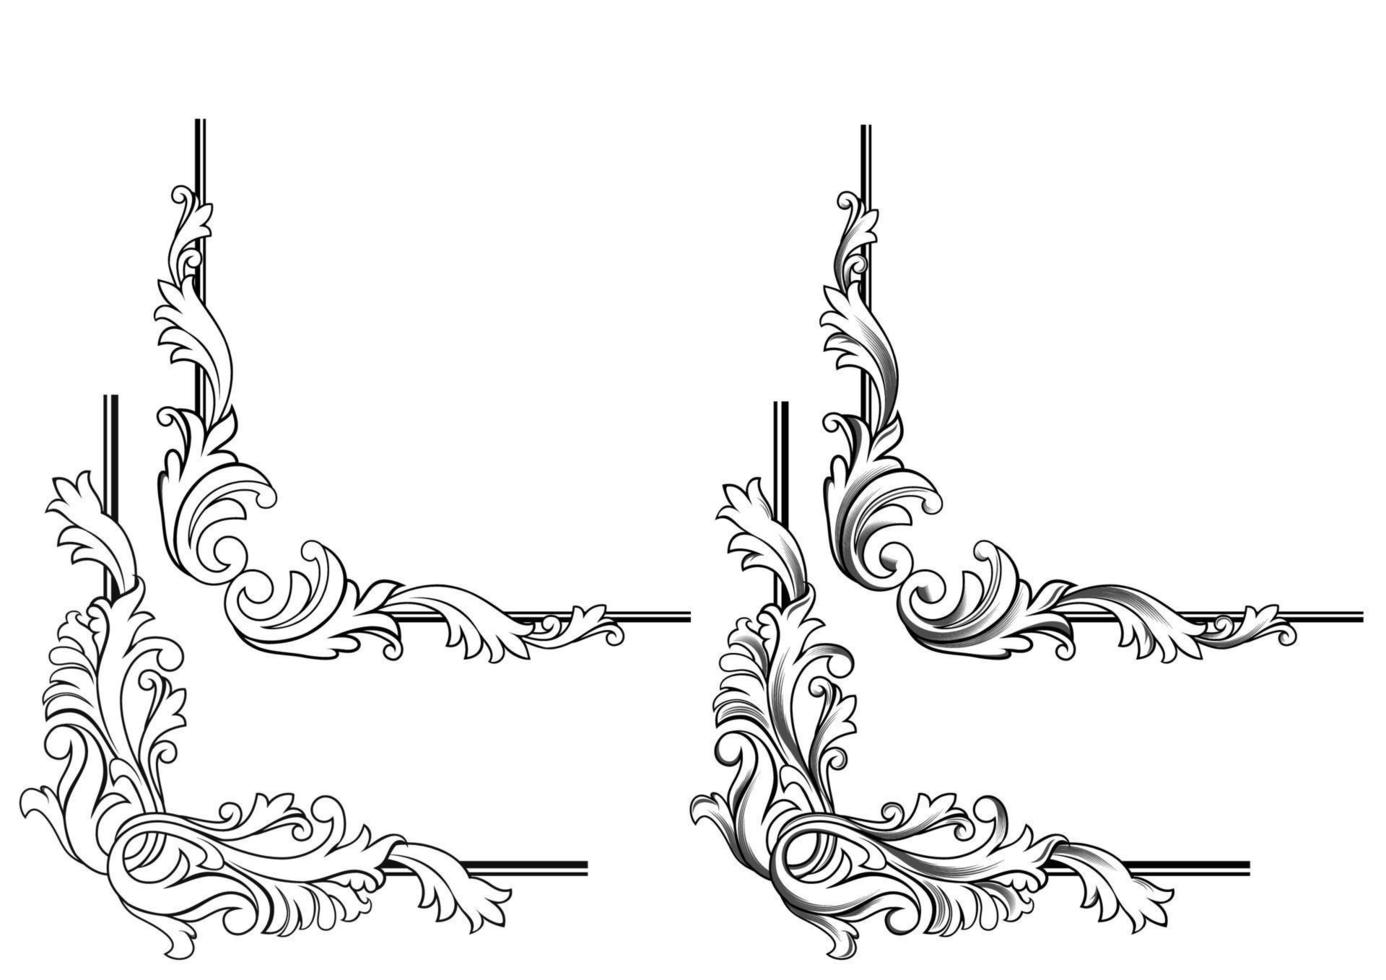 Swirl floral corner frame elements vector